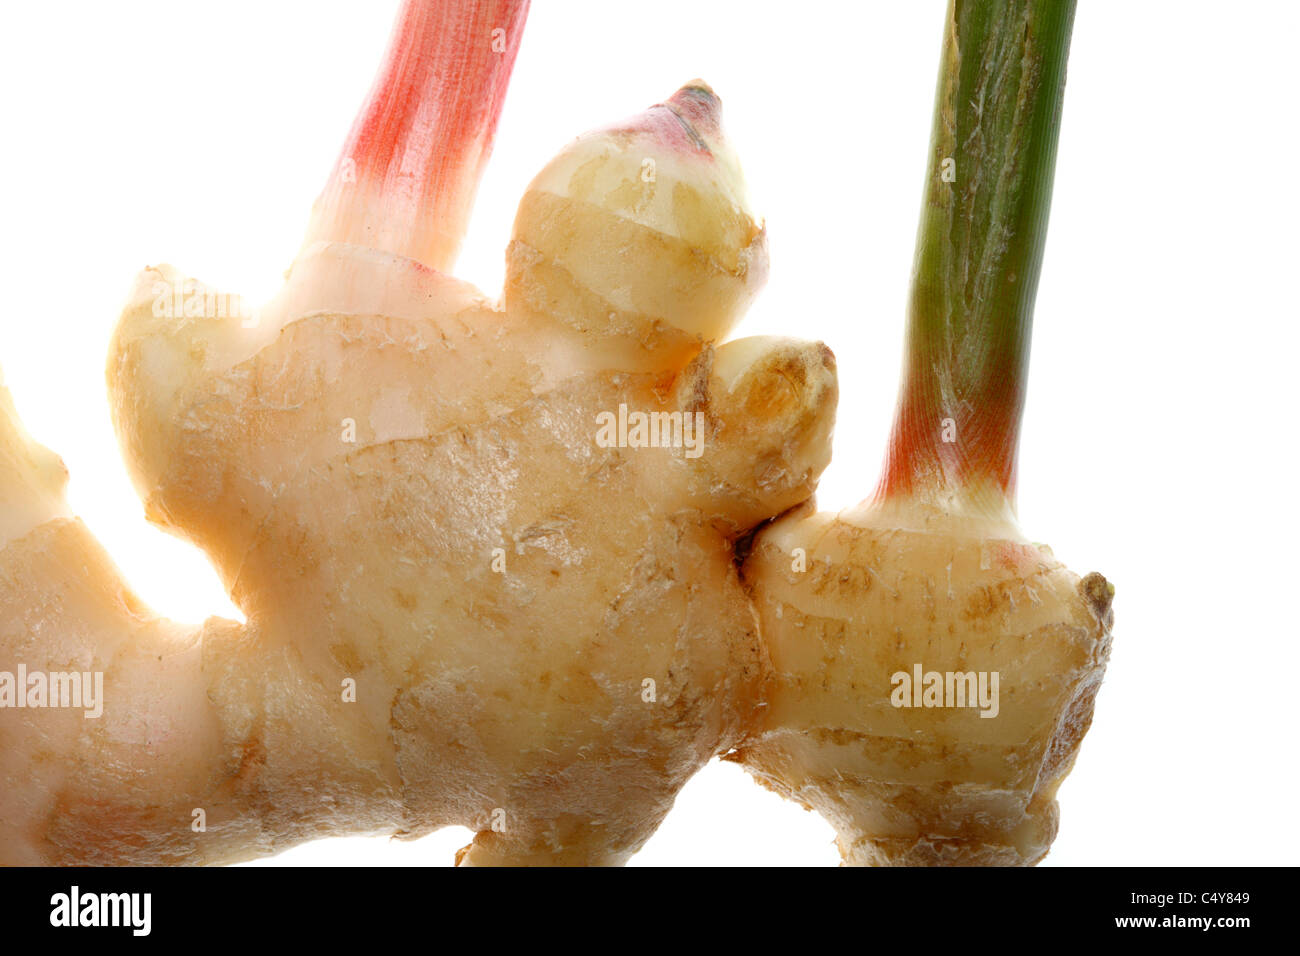 Vegetable, fresh ginger root. Stock Photo